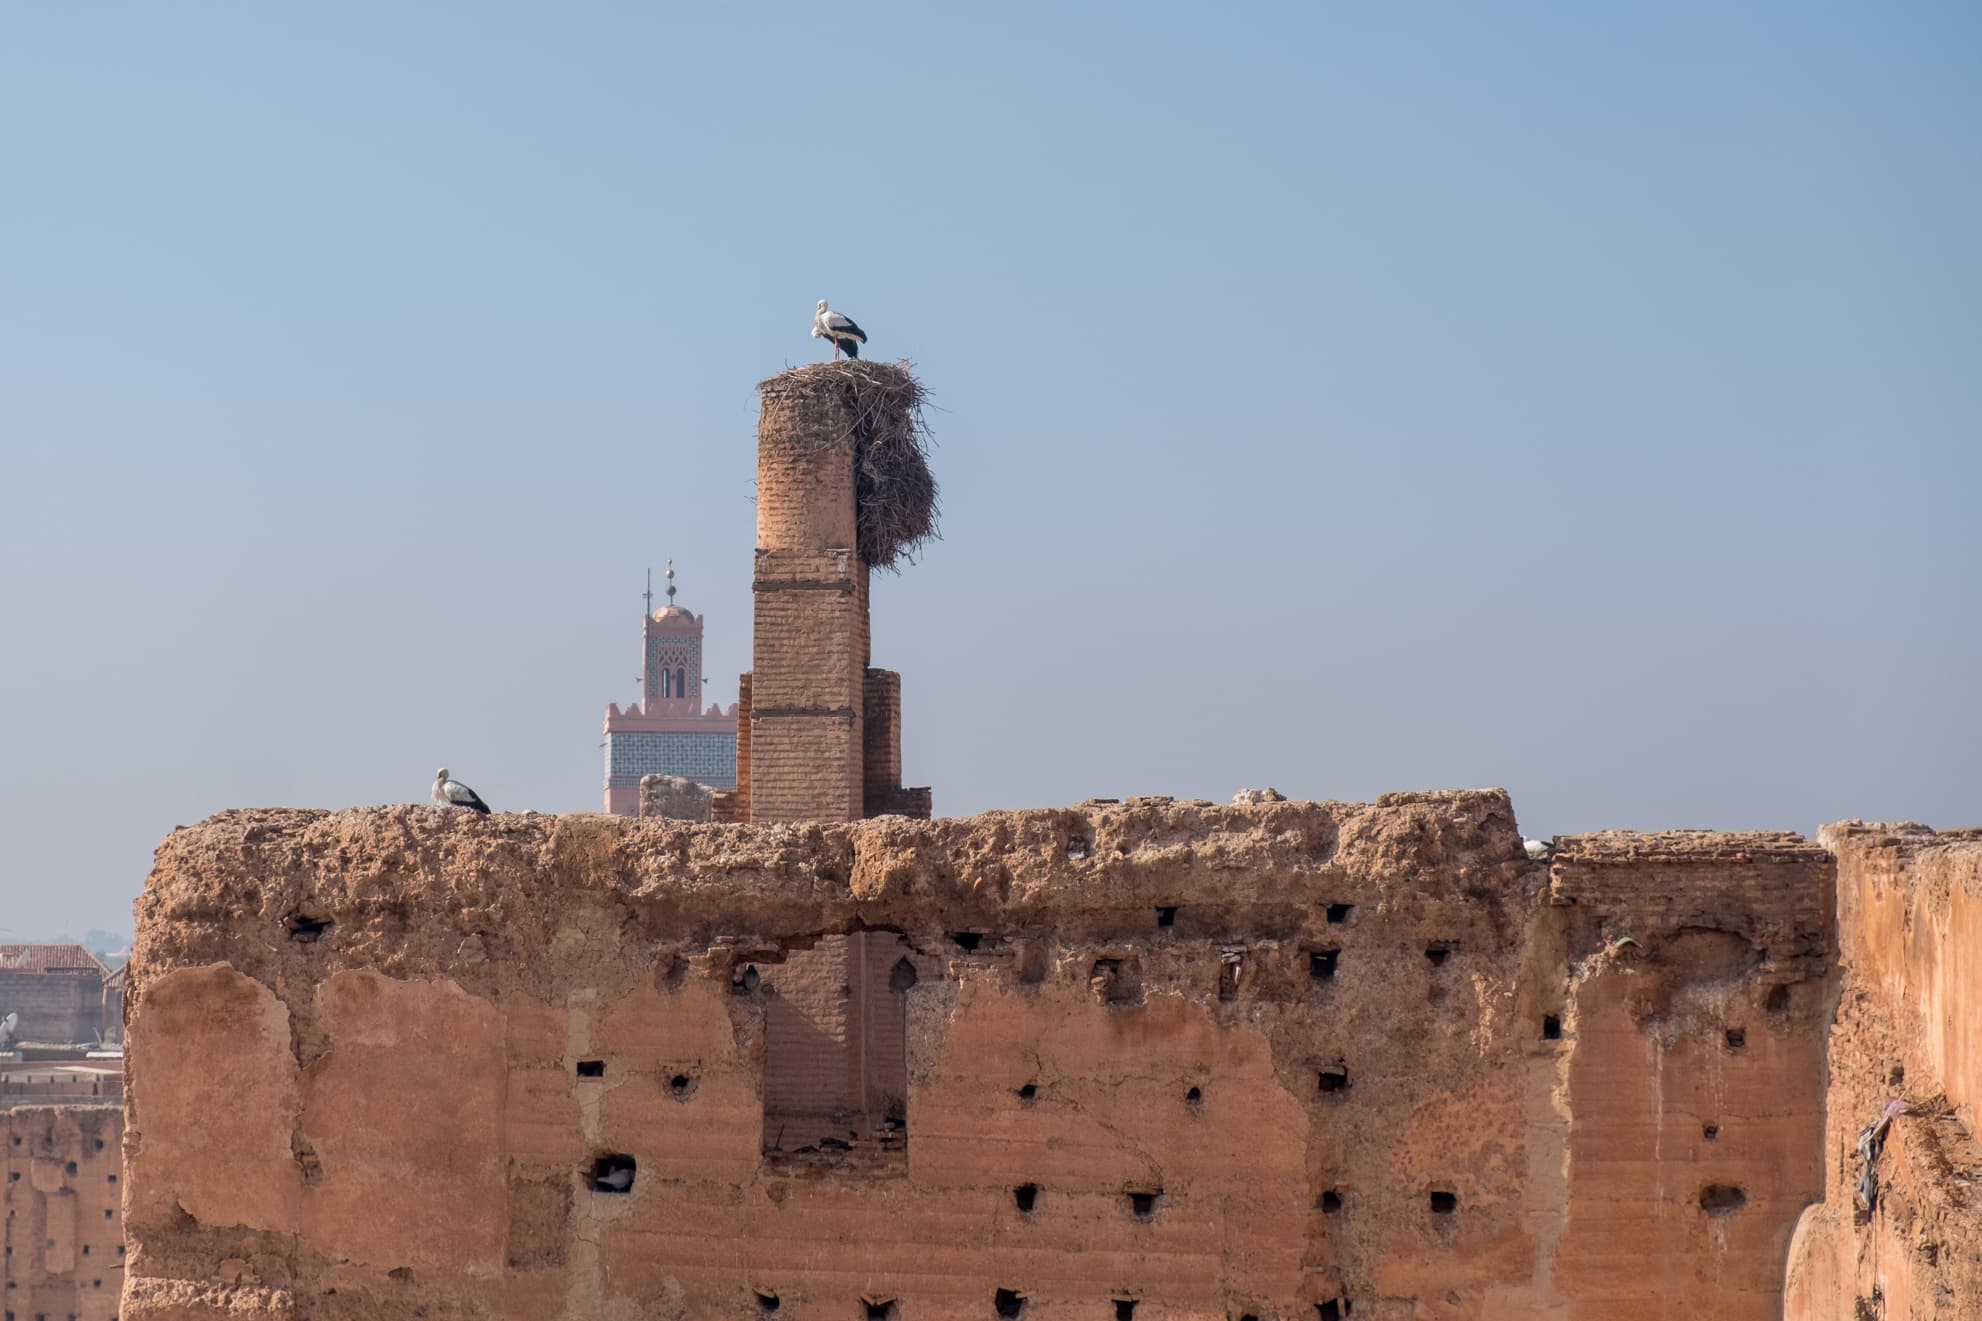 Storks and a minaret from El Badi palace